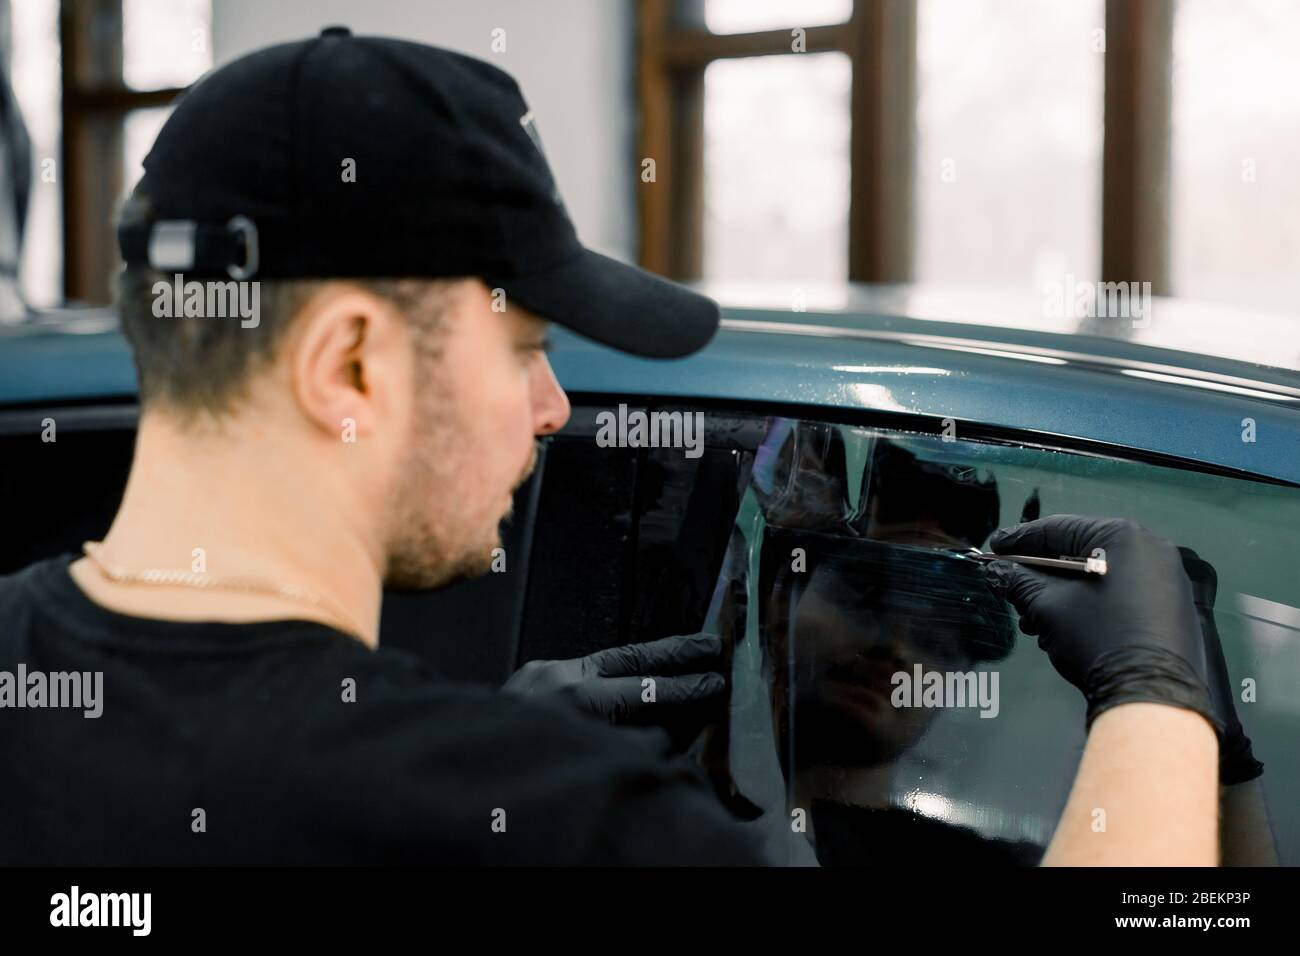 Vista posteriore dell'angolo dell'automobile che descrive l'officina del lavoratore maschio, che indossa il cappuccio nero e la t-shirt, applicando la pellicola di tinta su un finestrino dell'automobile in un garage Foto Stock